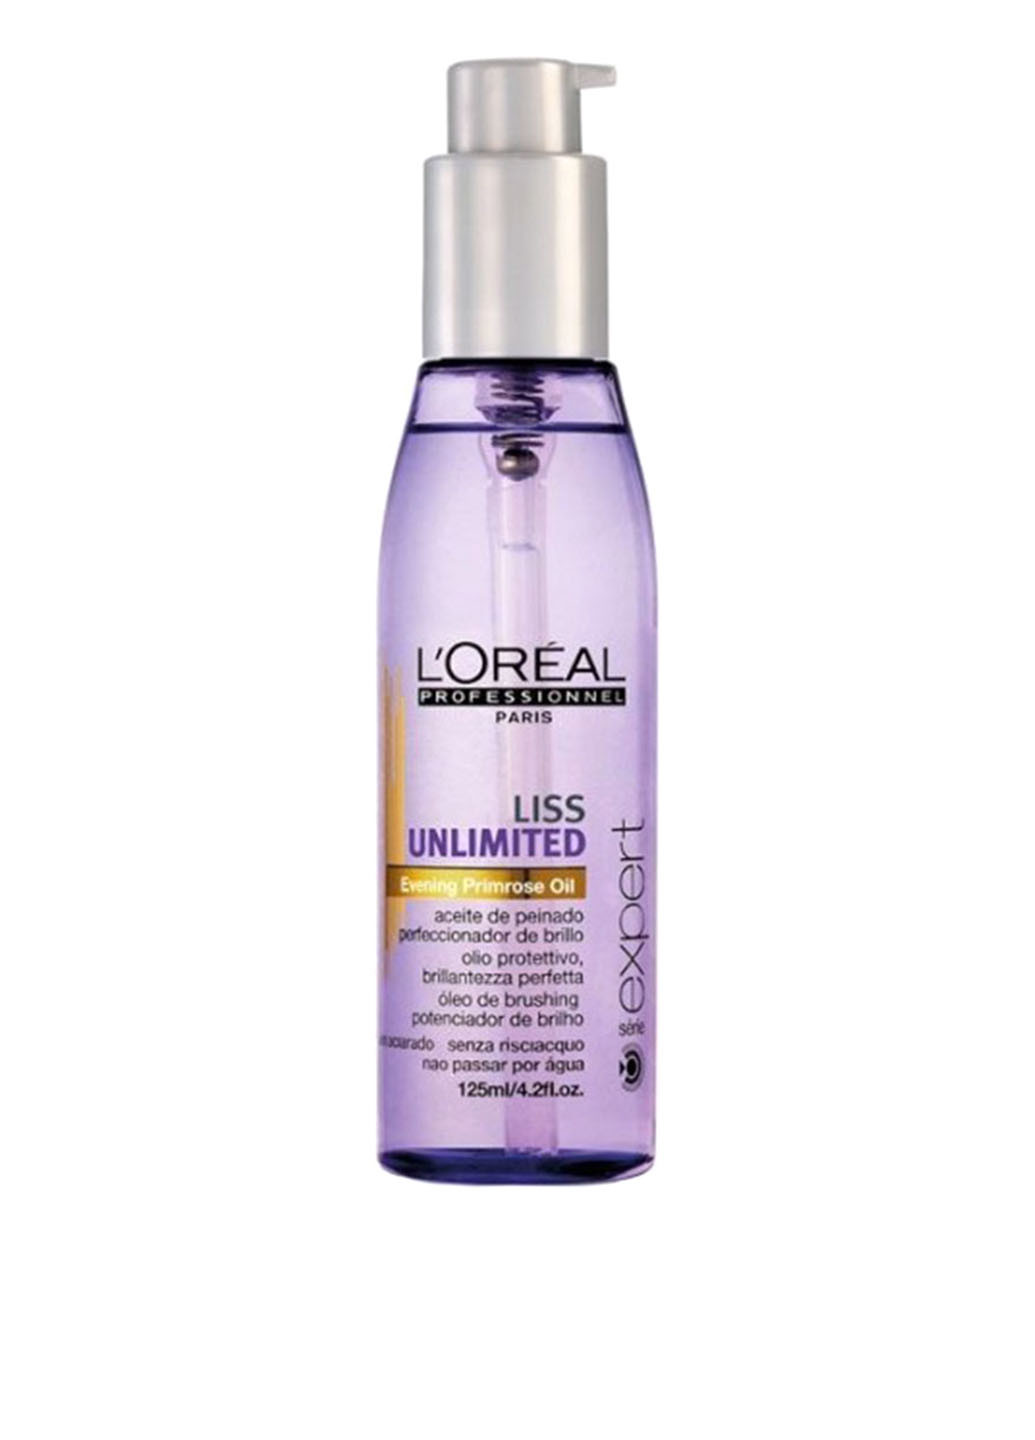 Разглаживающее термозащитное масло для непослушных волос Liss Unlimited 125 мл L'Oreal Professionnel (88095158)